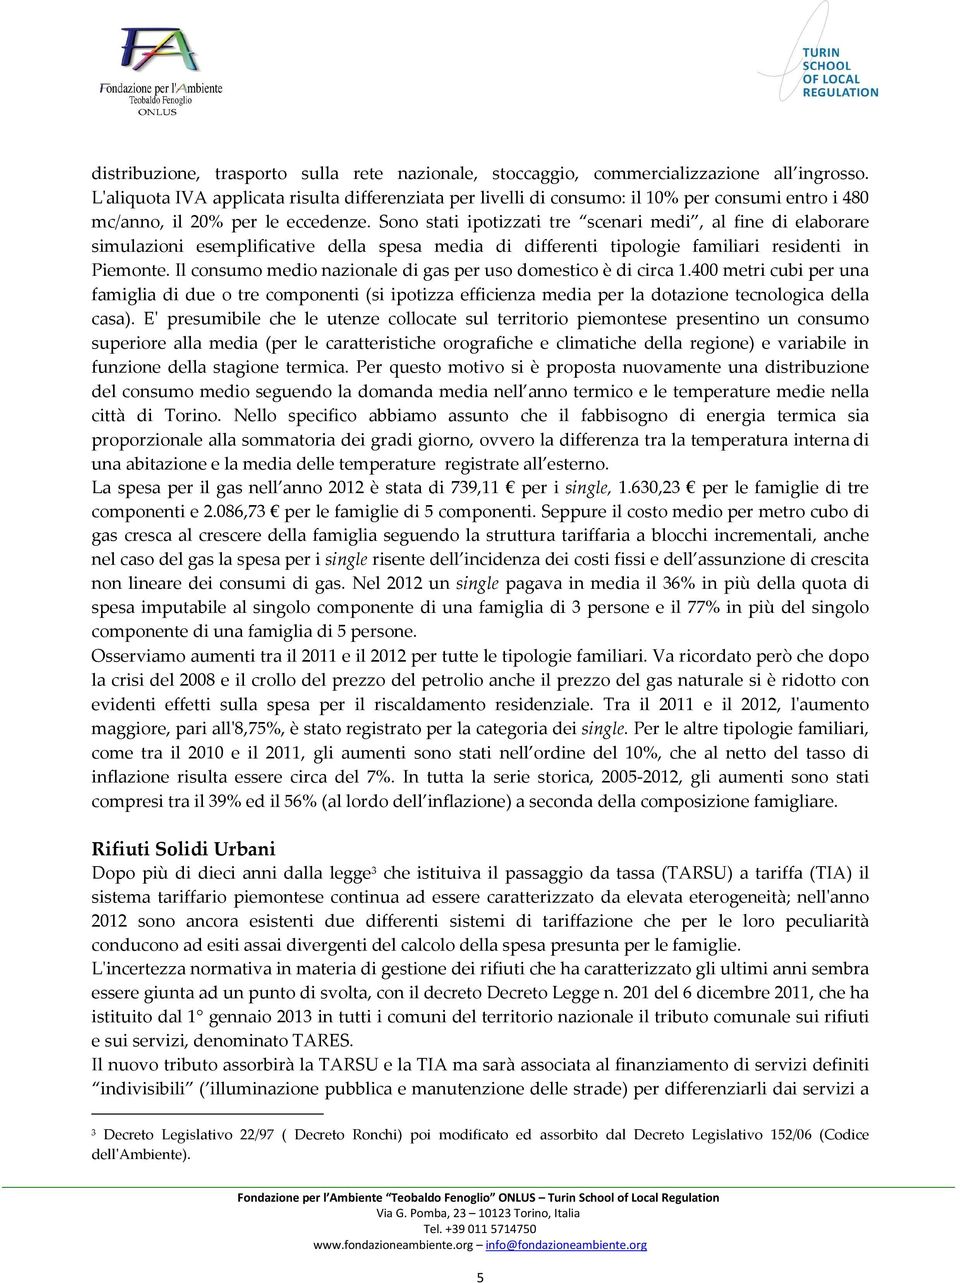 Sono stati ipotizzati tre scenari medi, al fine di elaborare simulazioni esemplificative della spesa media di differenti tipologie familiari residenti in Piemonte.